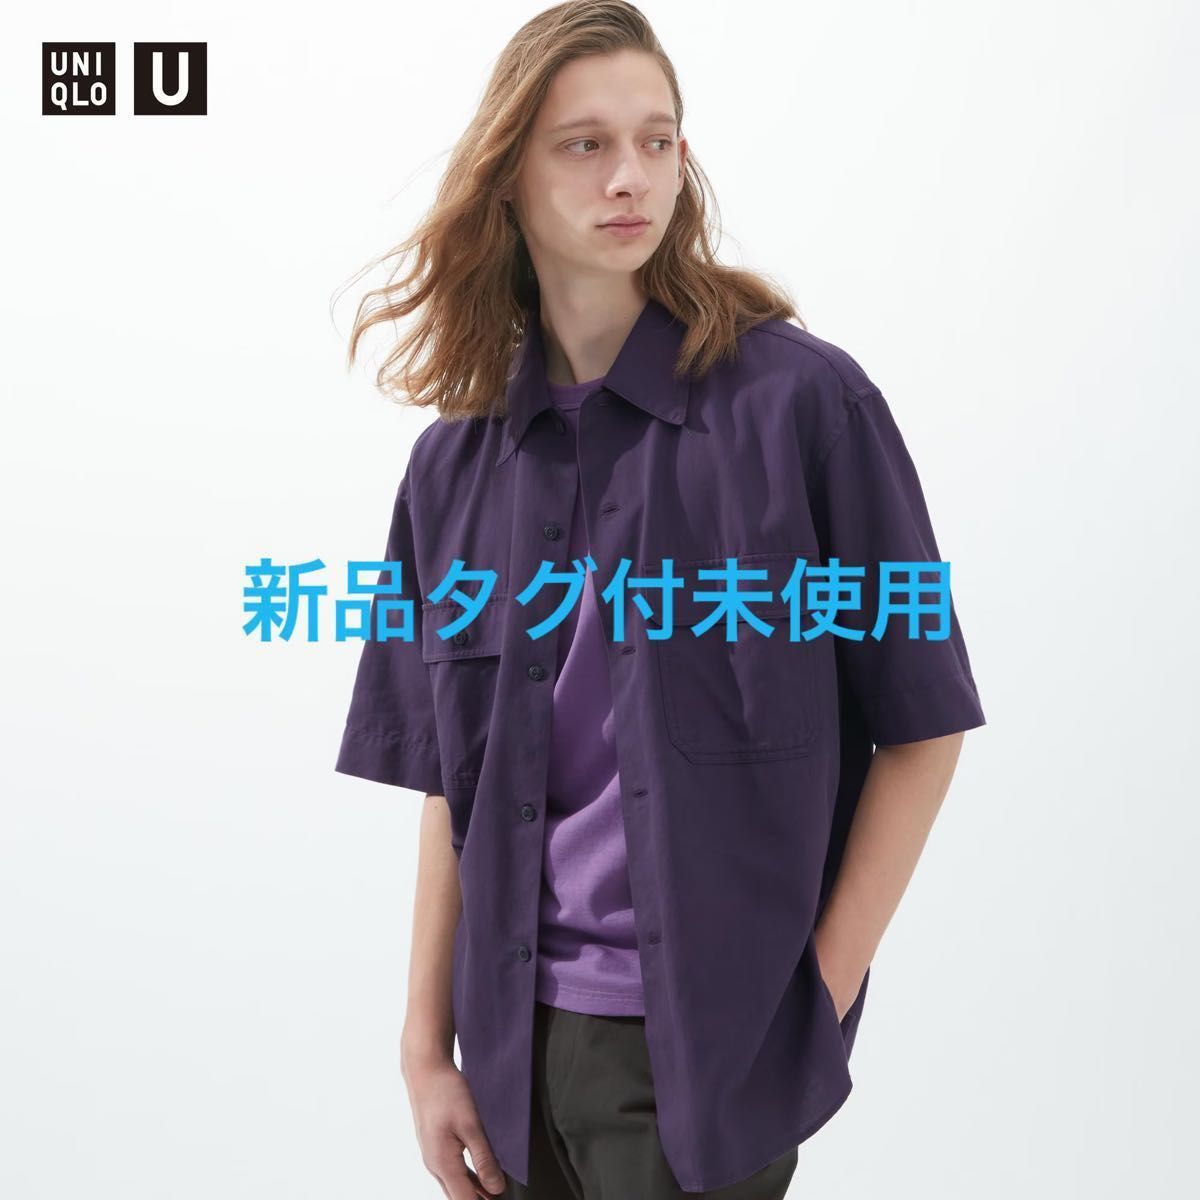 ユニクロU/UNIQLO U】オーバーサイズワークシャツ/パープル/S/メンズ